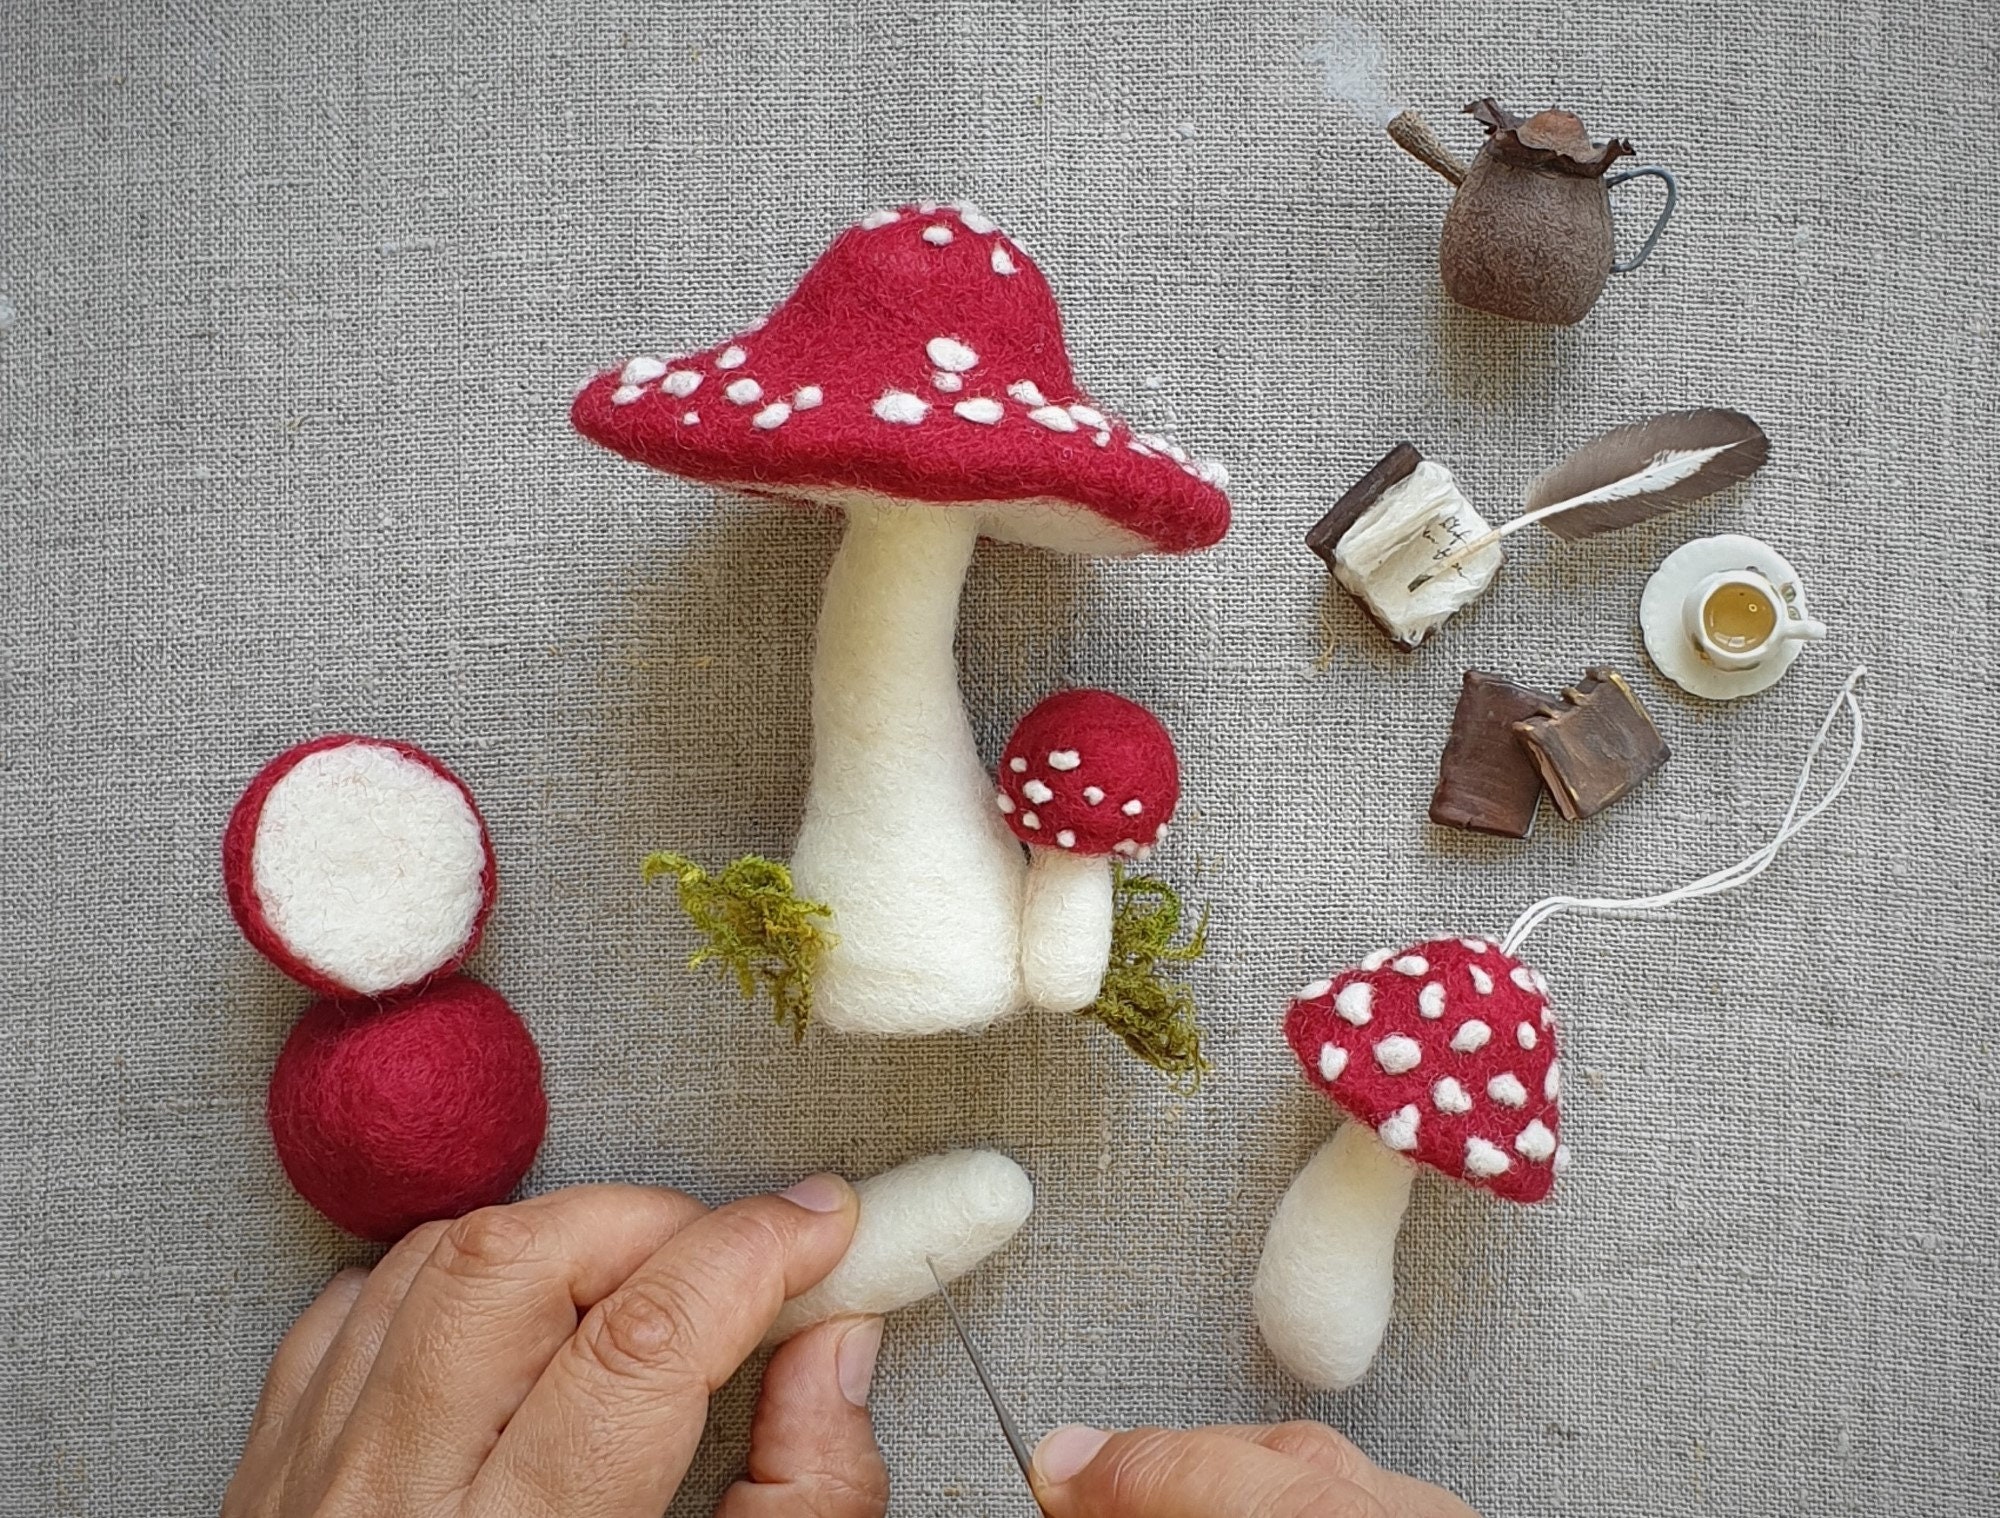 Kromski Toadstool Mushroom Needle Felting Kit